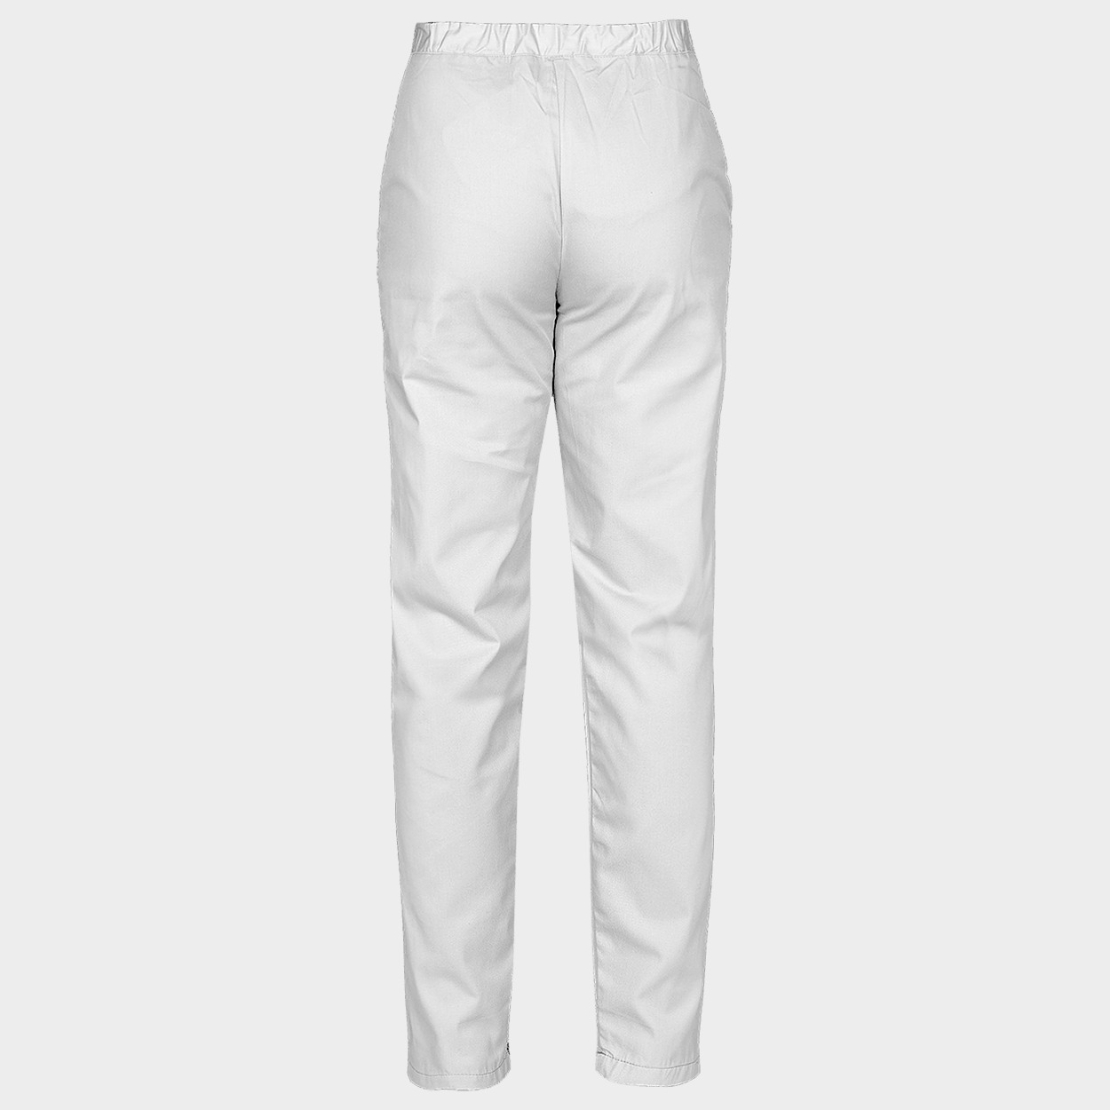 BARISA WHITE Унисекс панталон